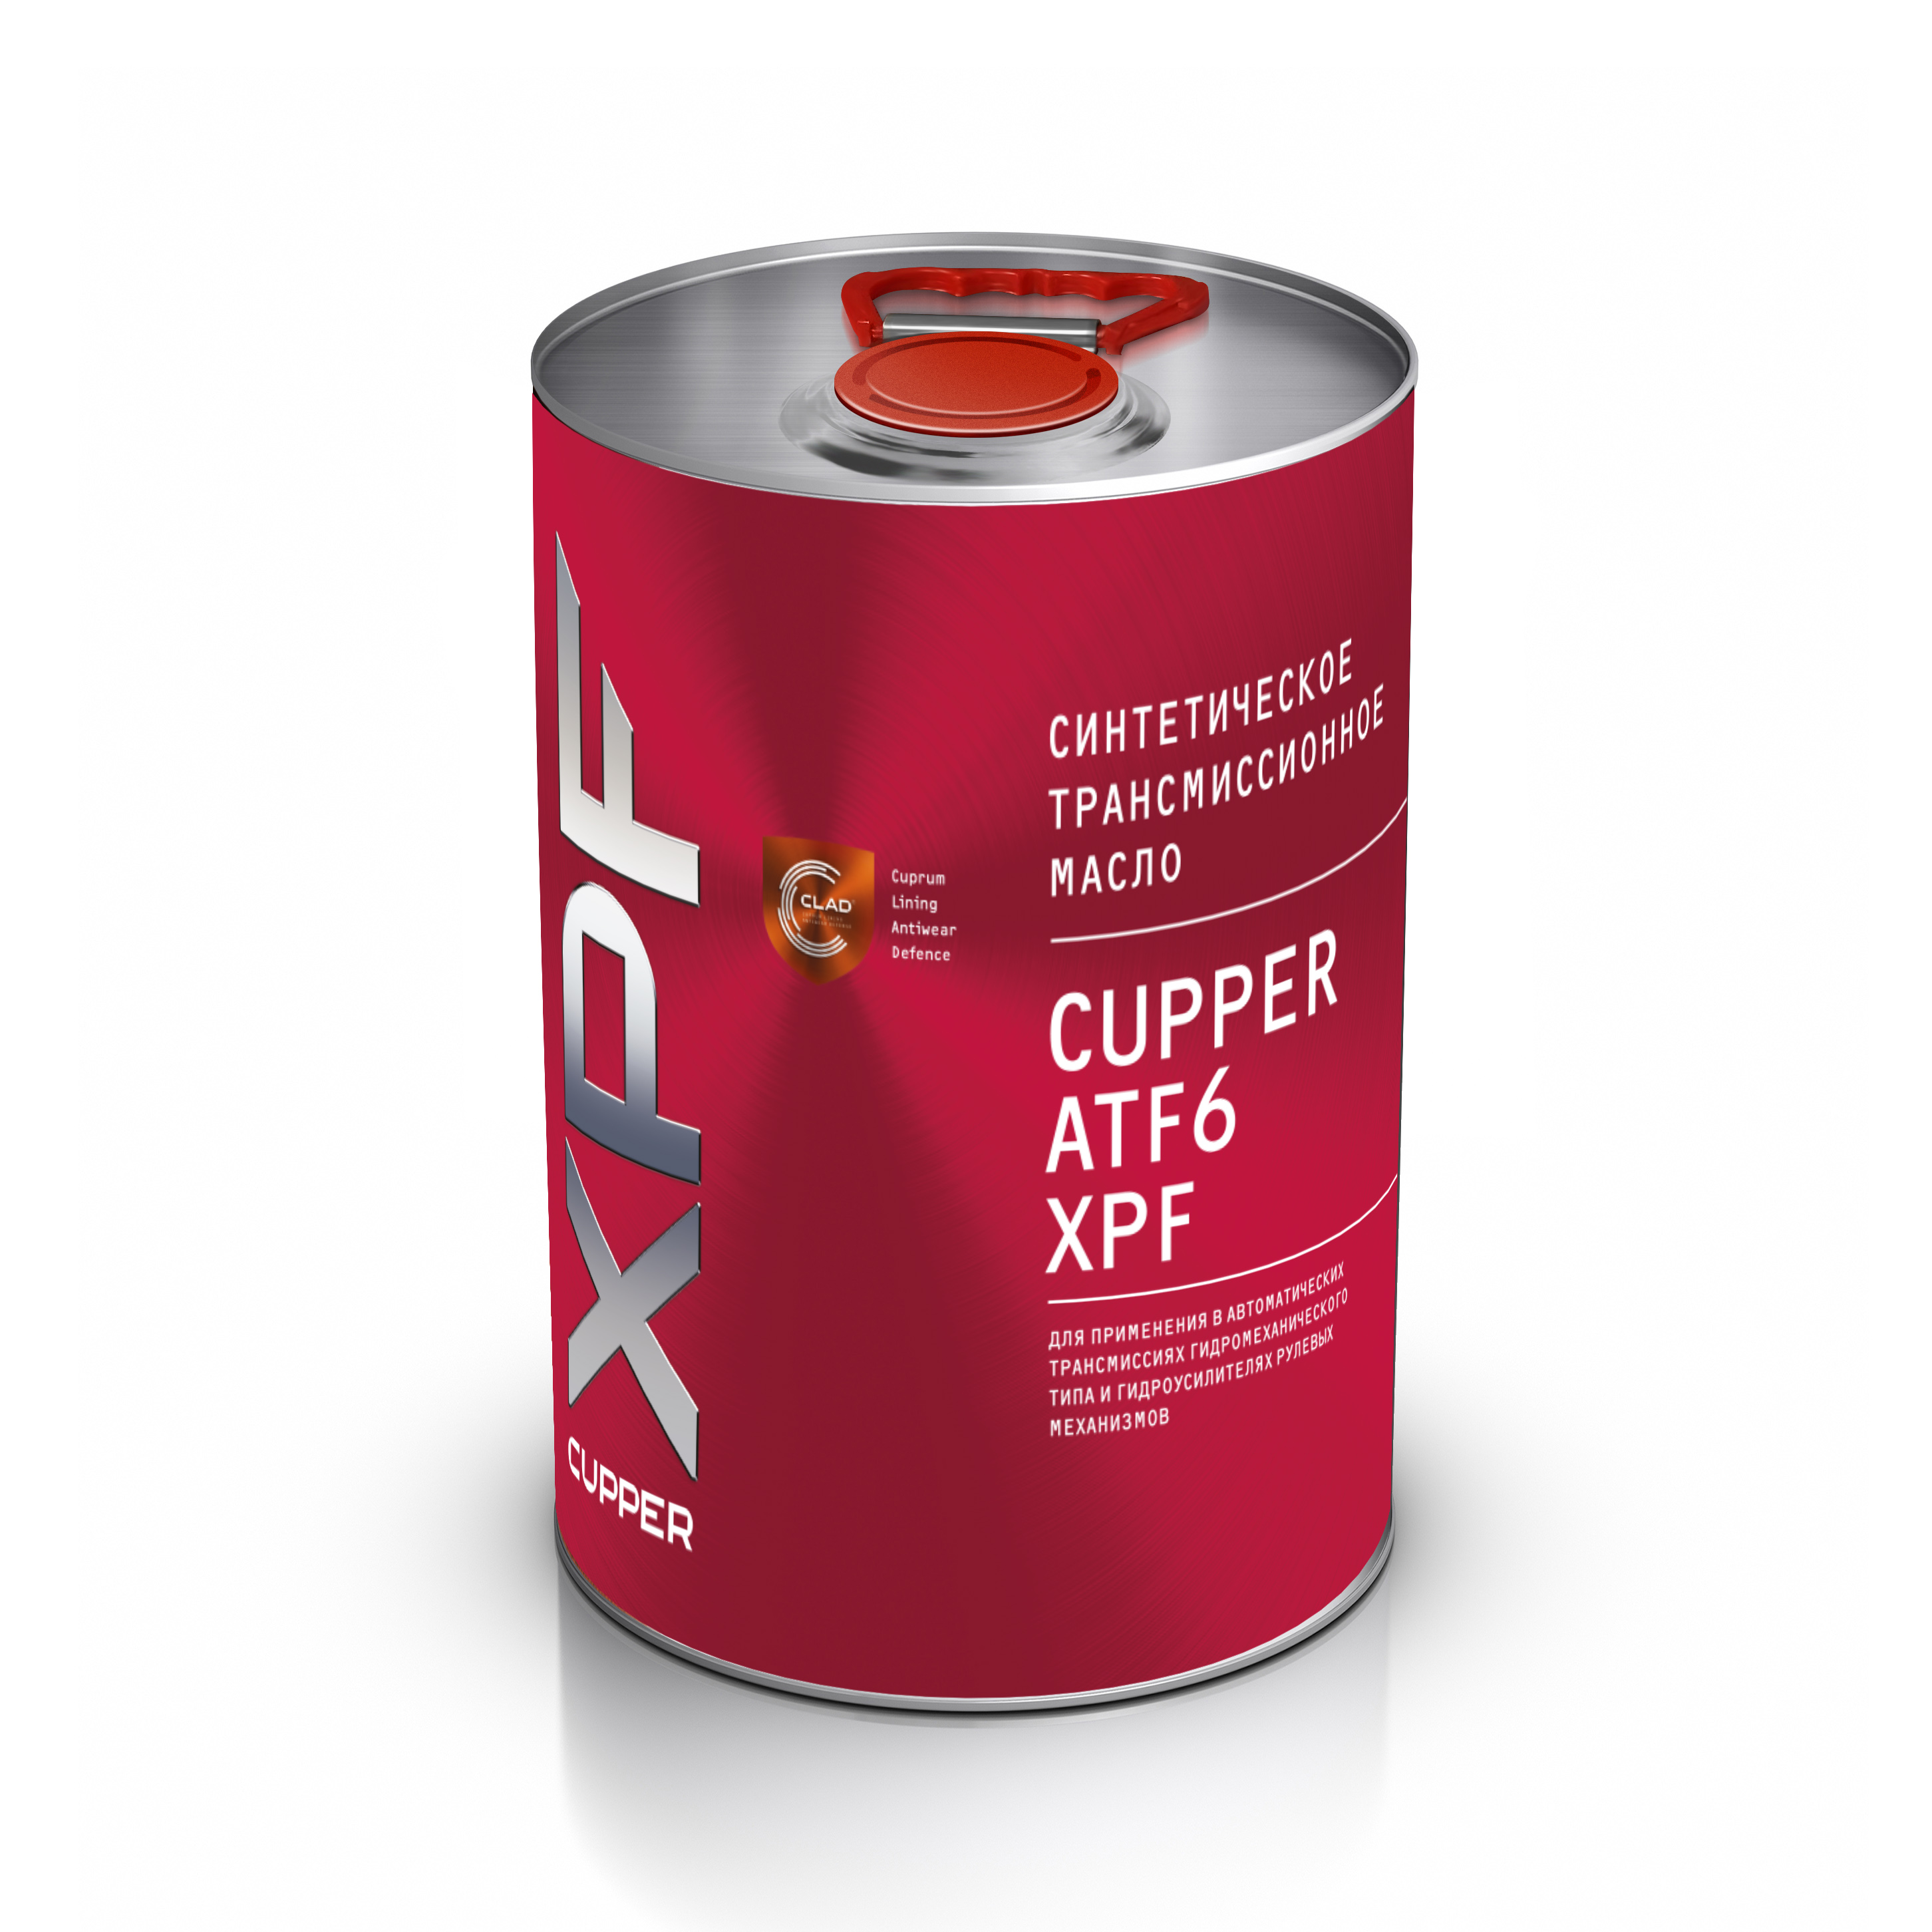 Atf 6 трансмиссионное масло. Cupper масло трансмиссионное. Cupper atf2+ XPF артикул. ATF 6. Масло японское 75w85.